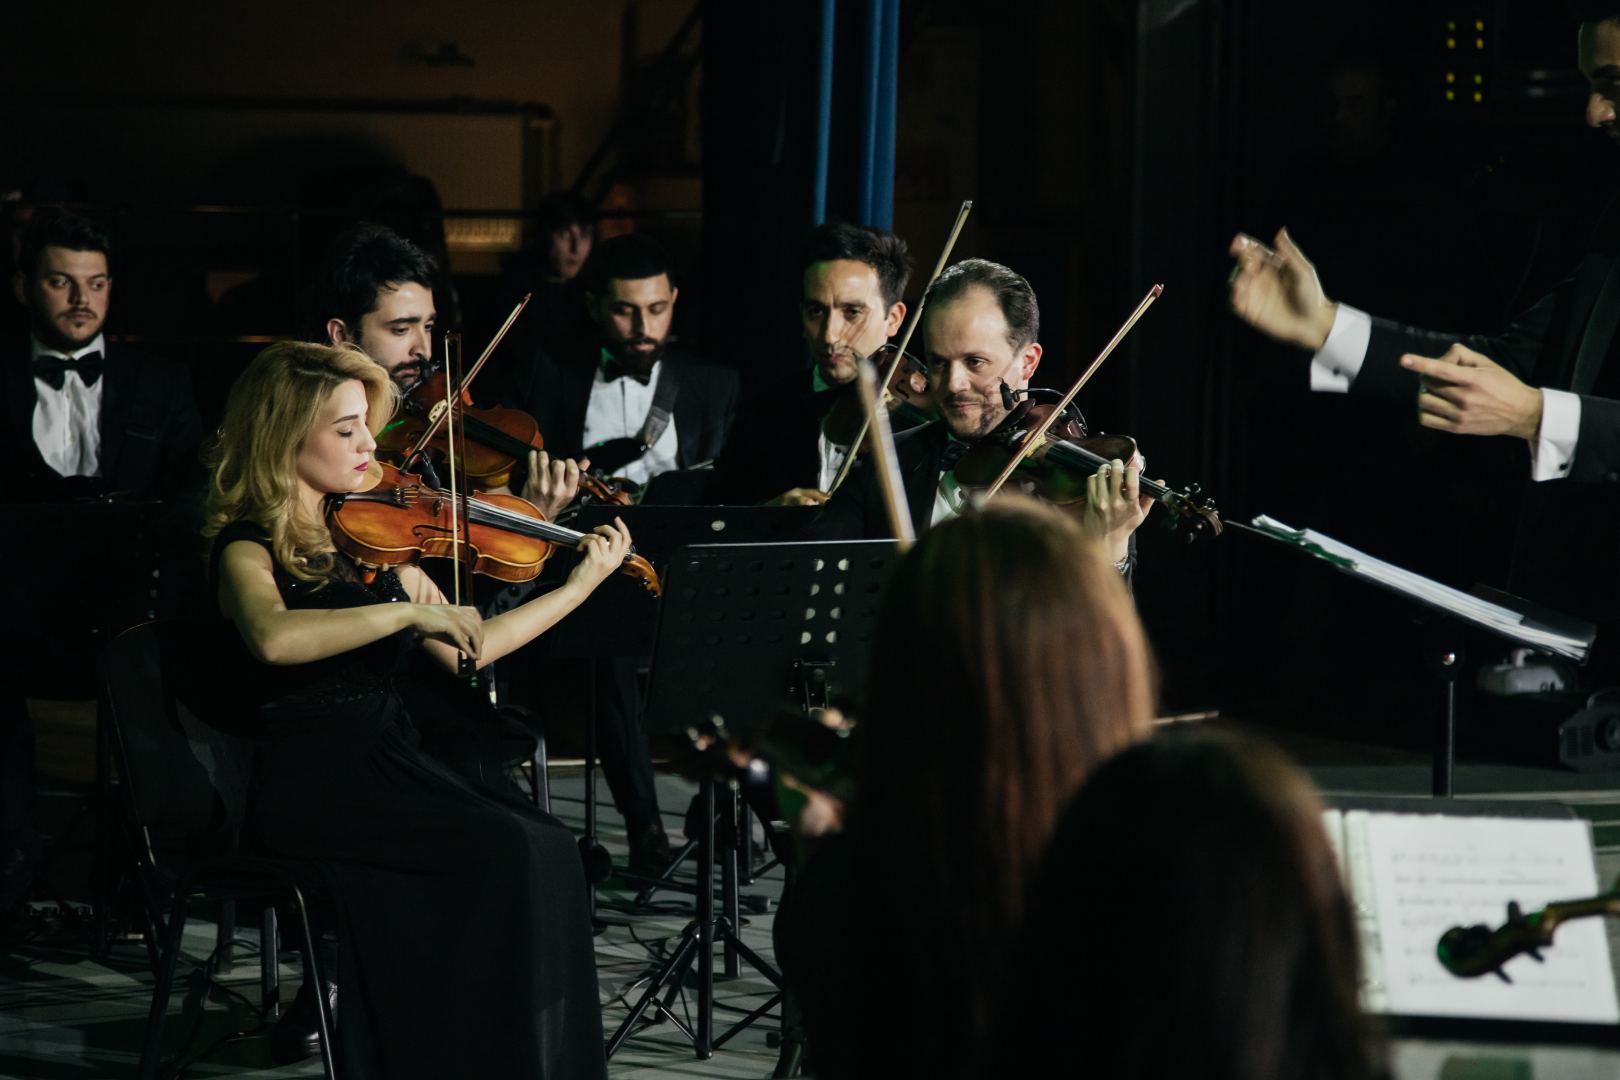 125-летие кинематографа Азербайджана отметили мультимедийным шоу с песнями и танцами (ВИДЕО, ФОТО)